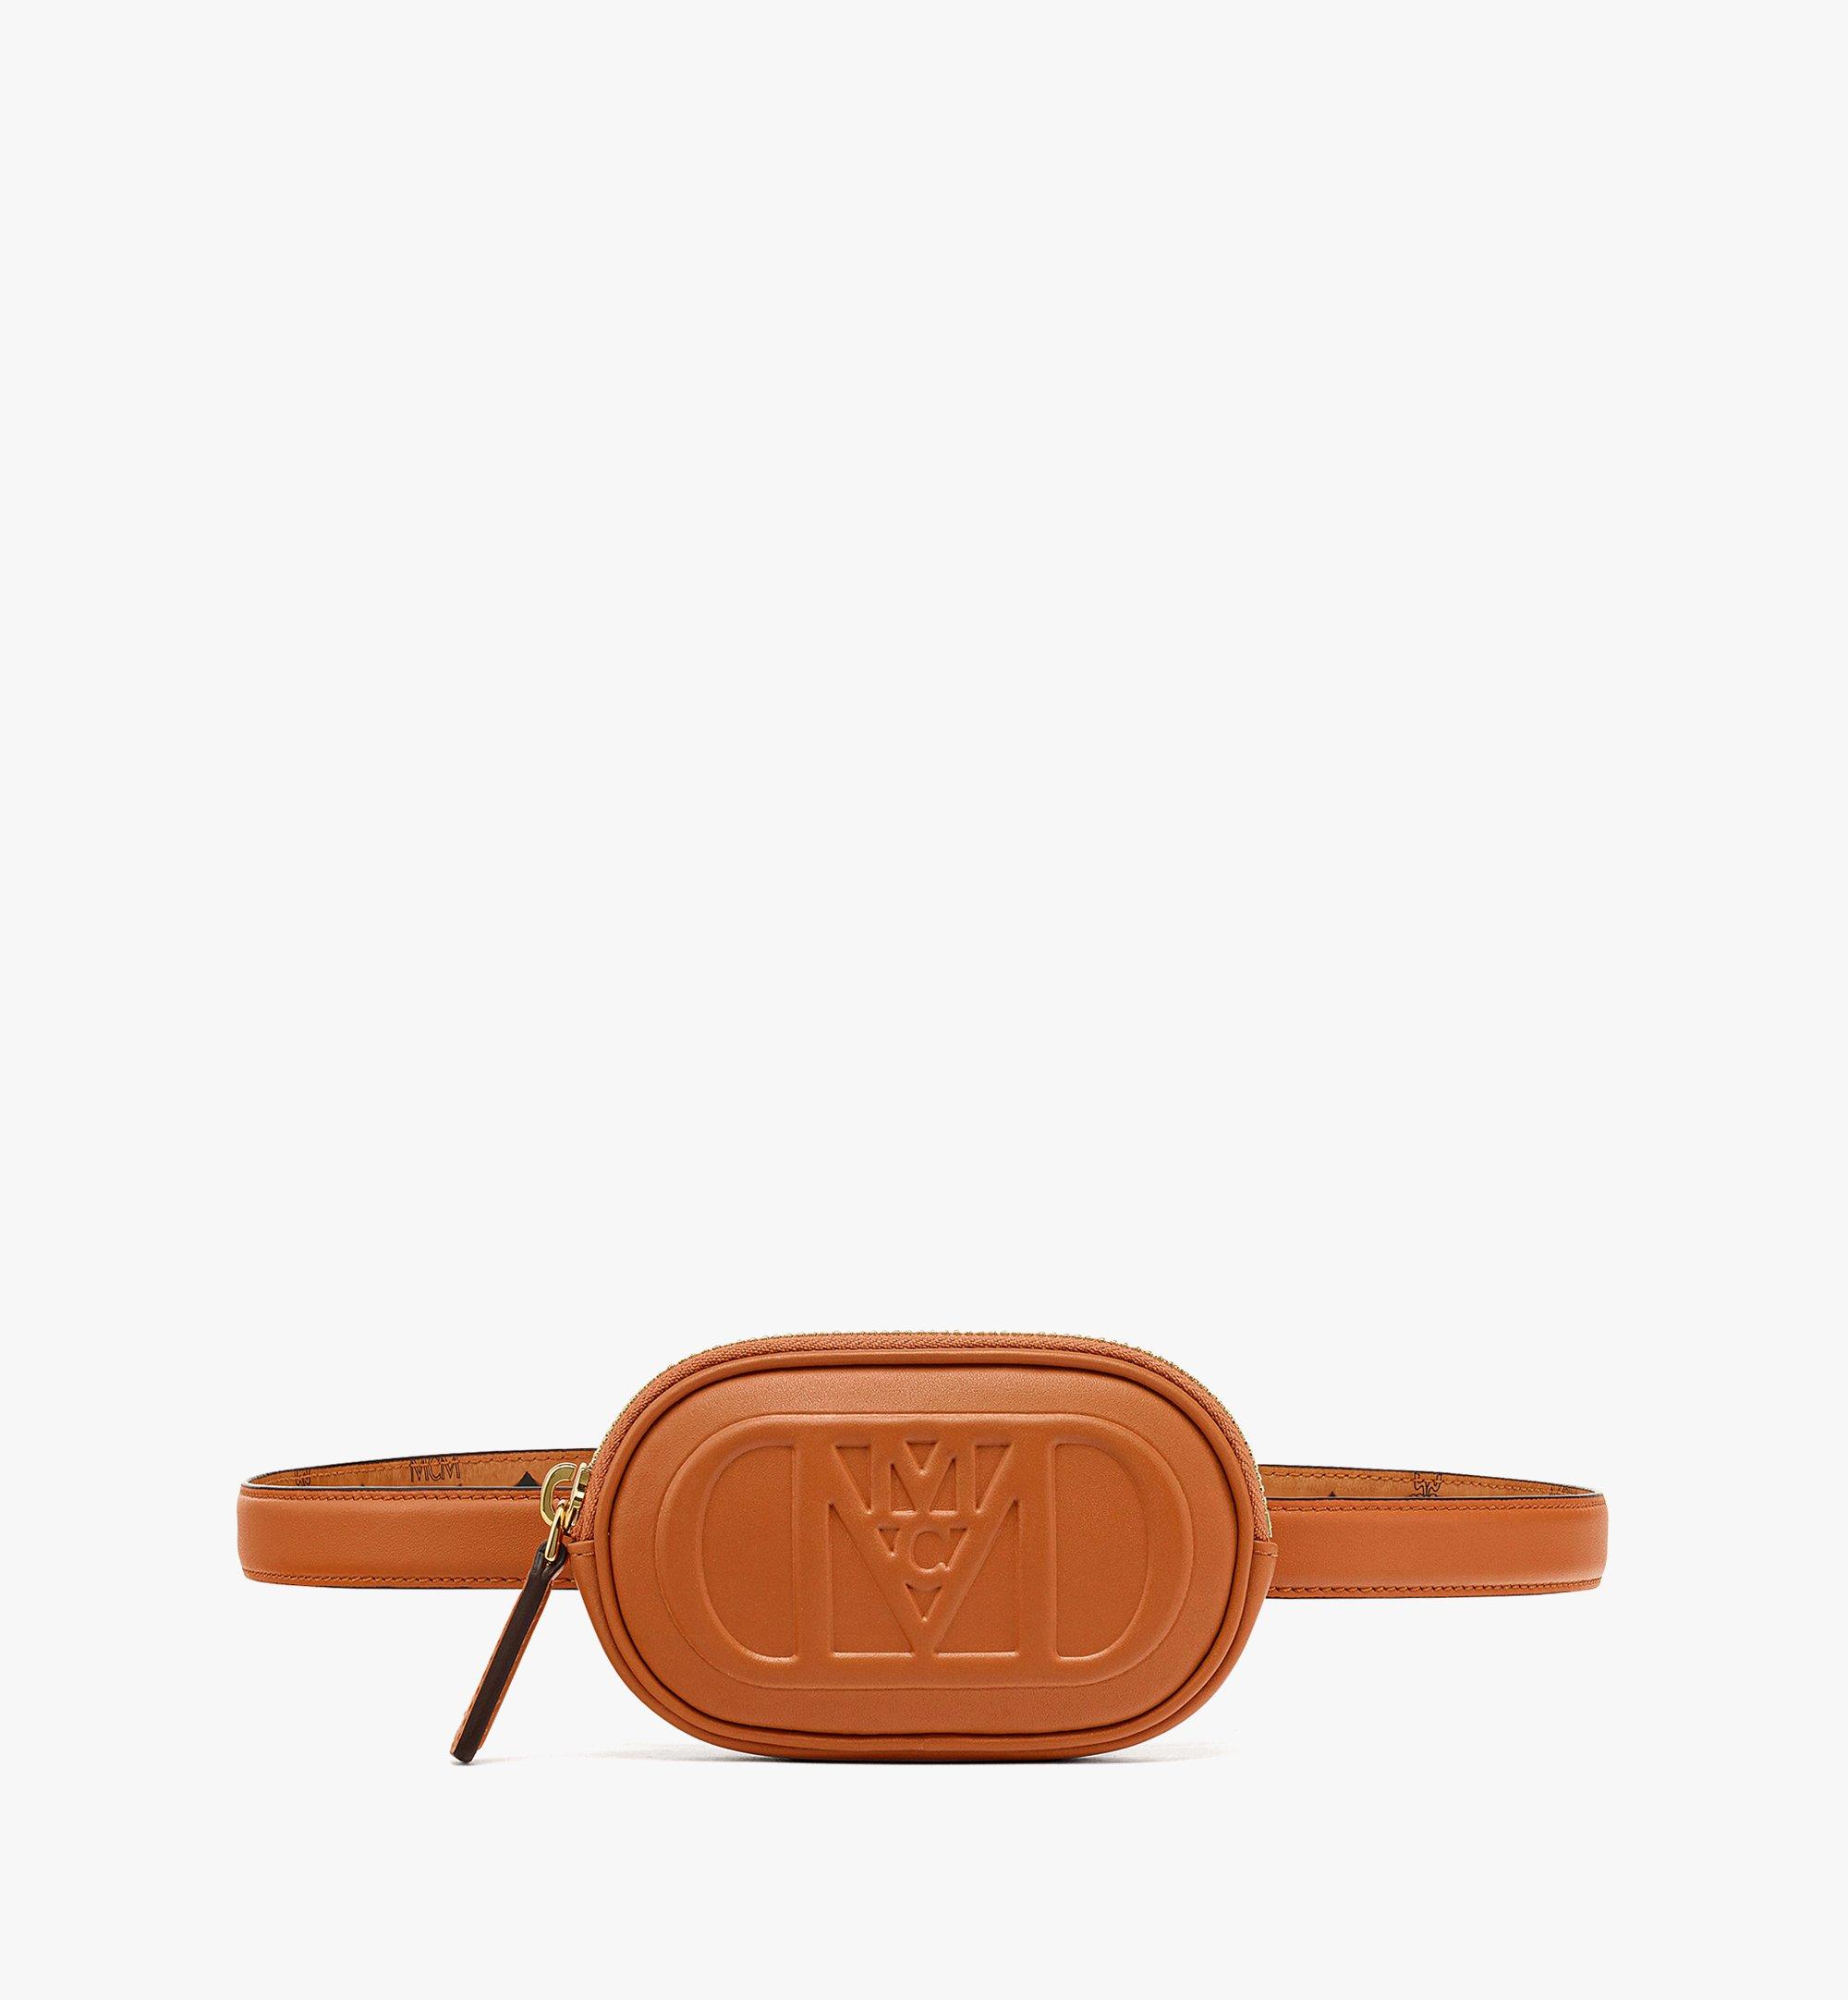 Louis Vuitton & MCM Belt Bundle Lot Deal, Note: If